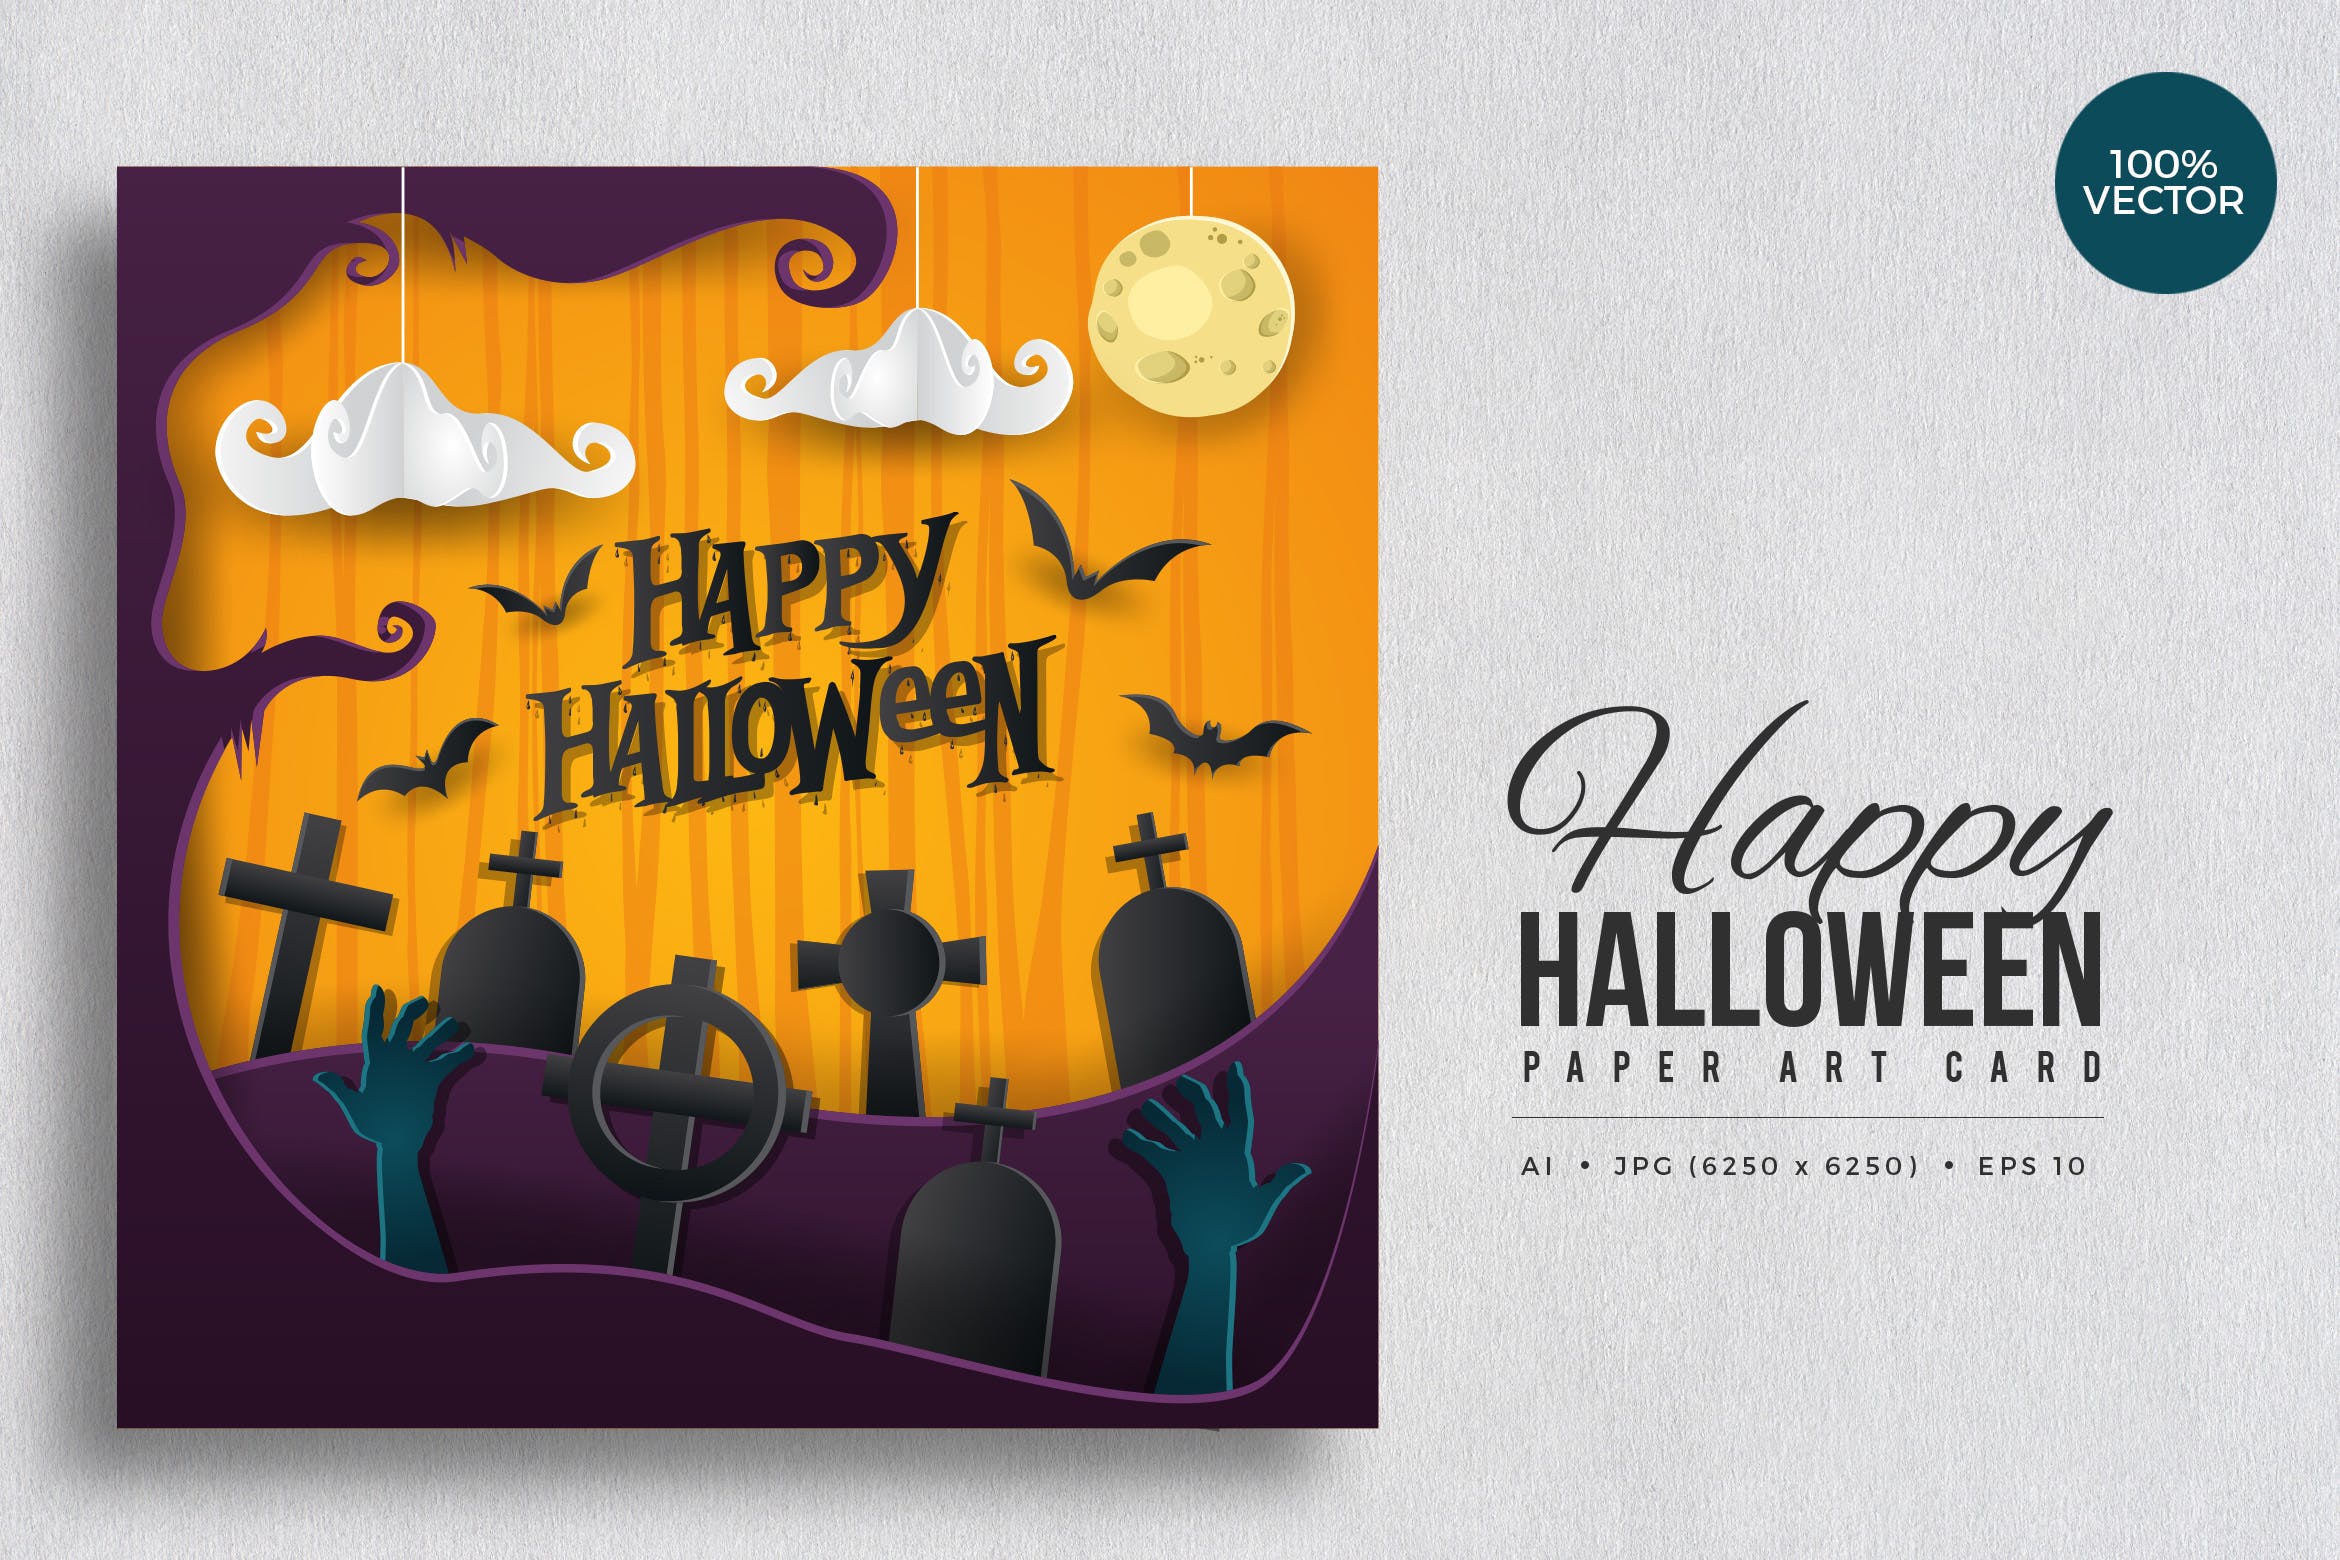 万圣节庆祝主题剪纸艺术矢量插画素材v1 Happy Halloween Paper Art Vector Card Vol.1插图